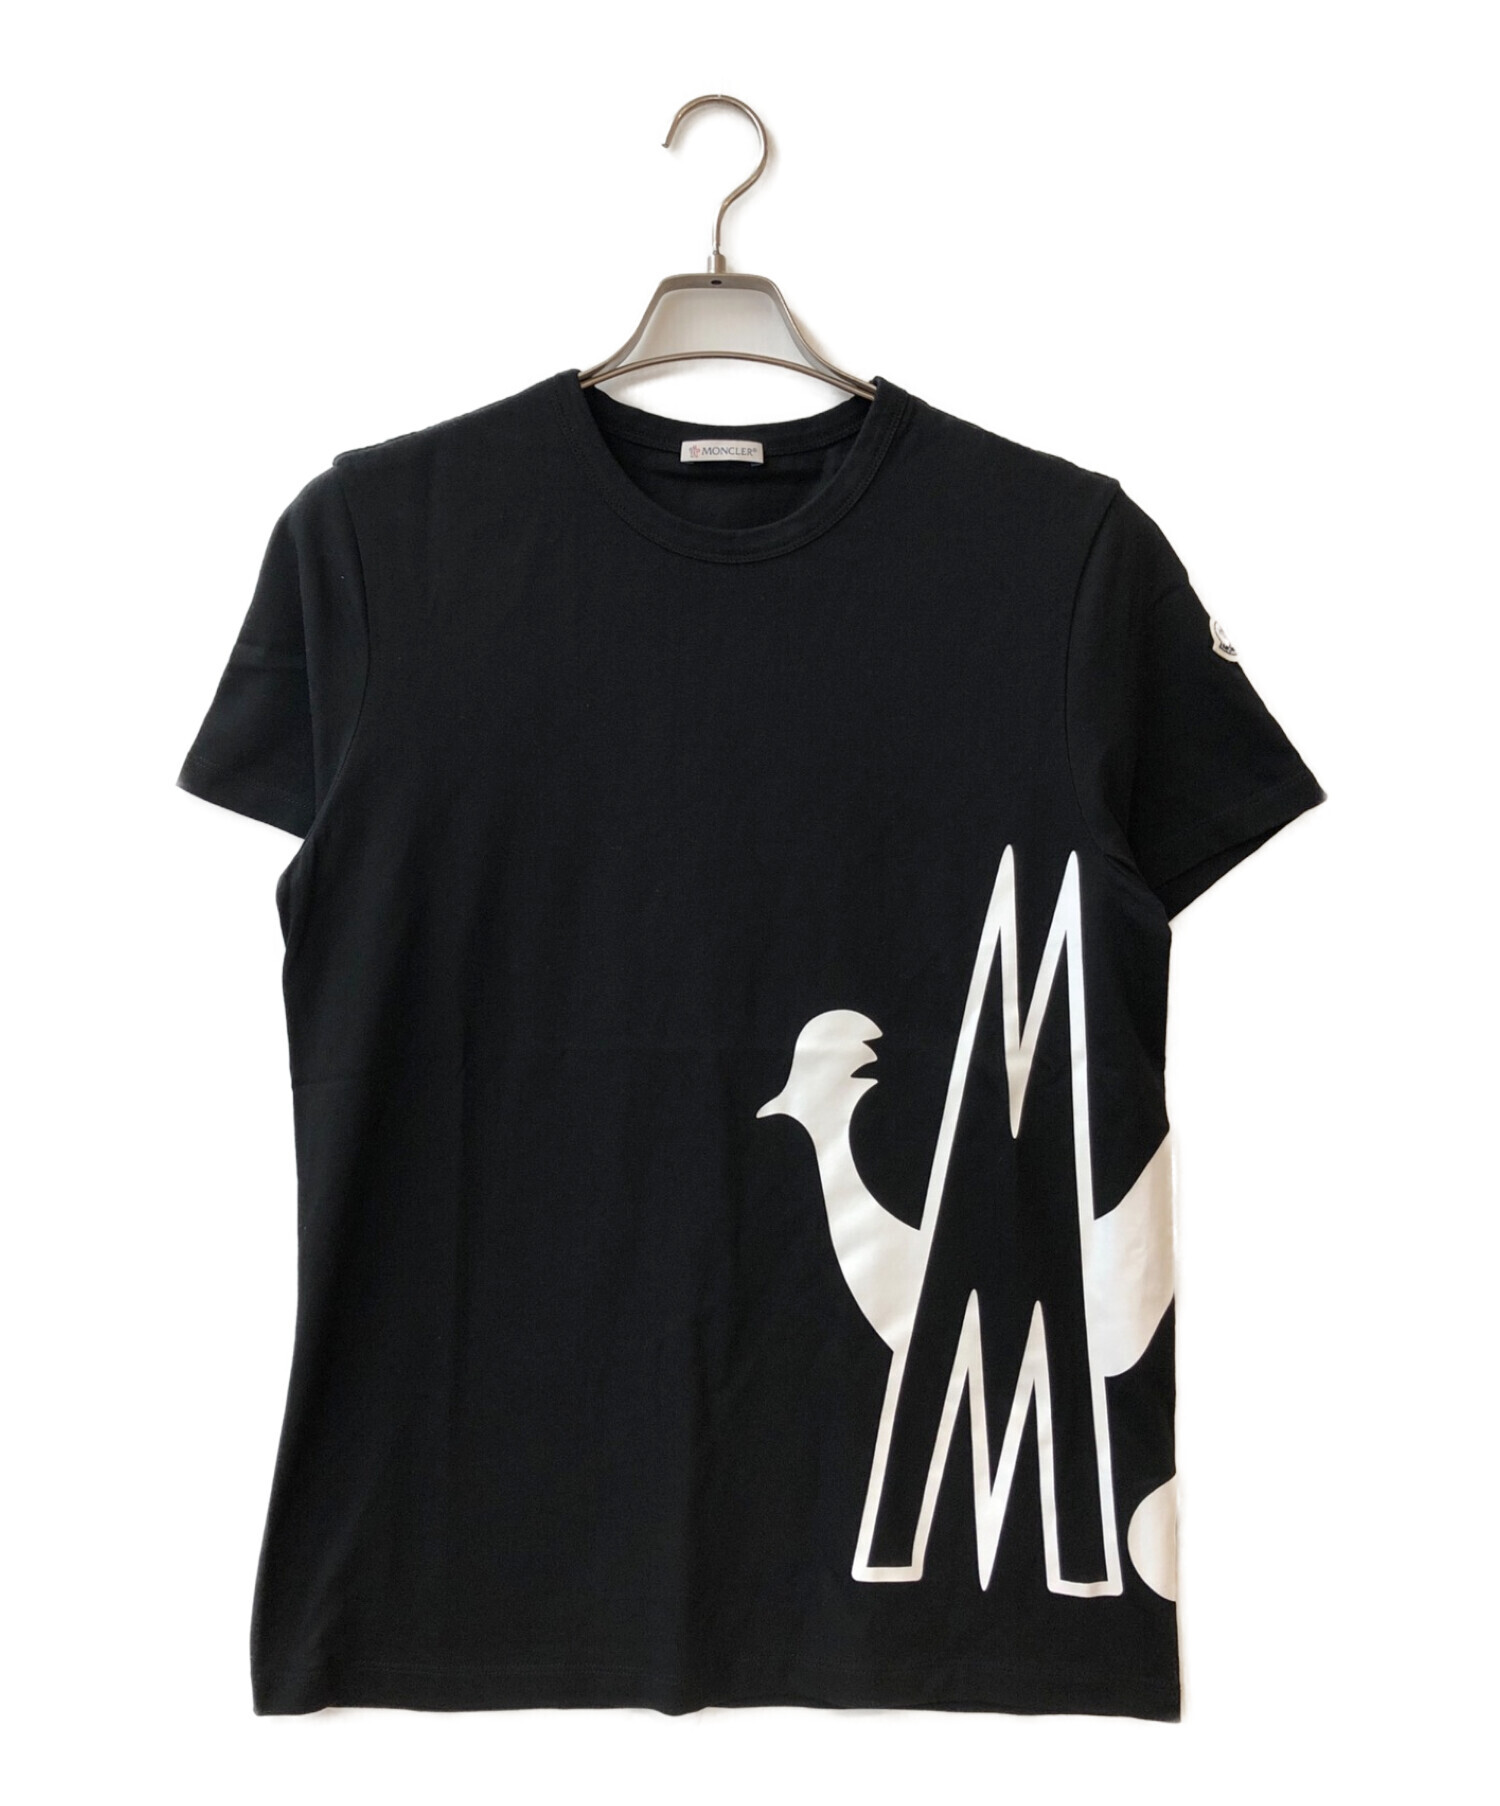 MONCLER (モンクレール) 19AWロゴプリントTシャツ ブラック サイズ:M